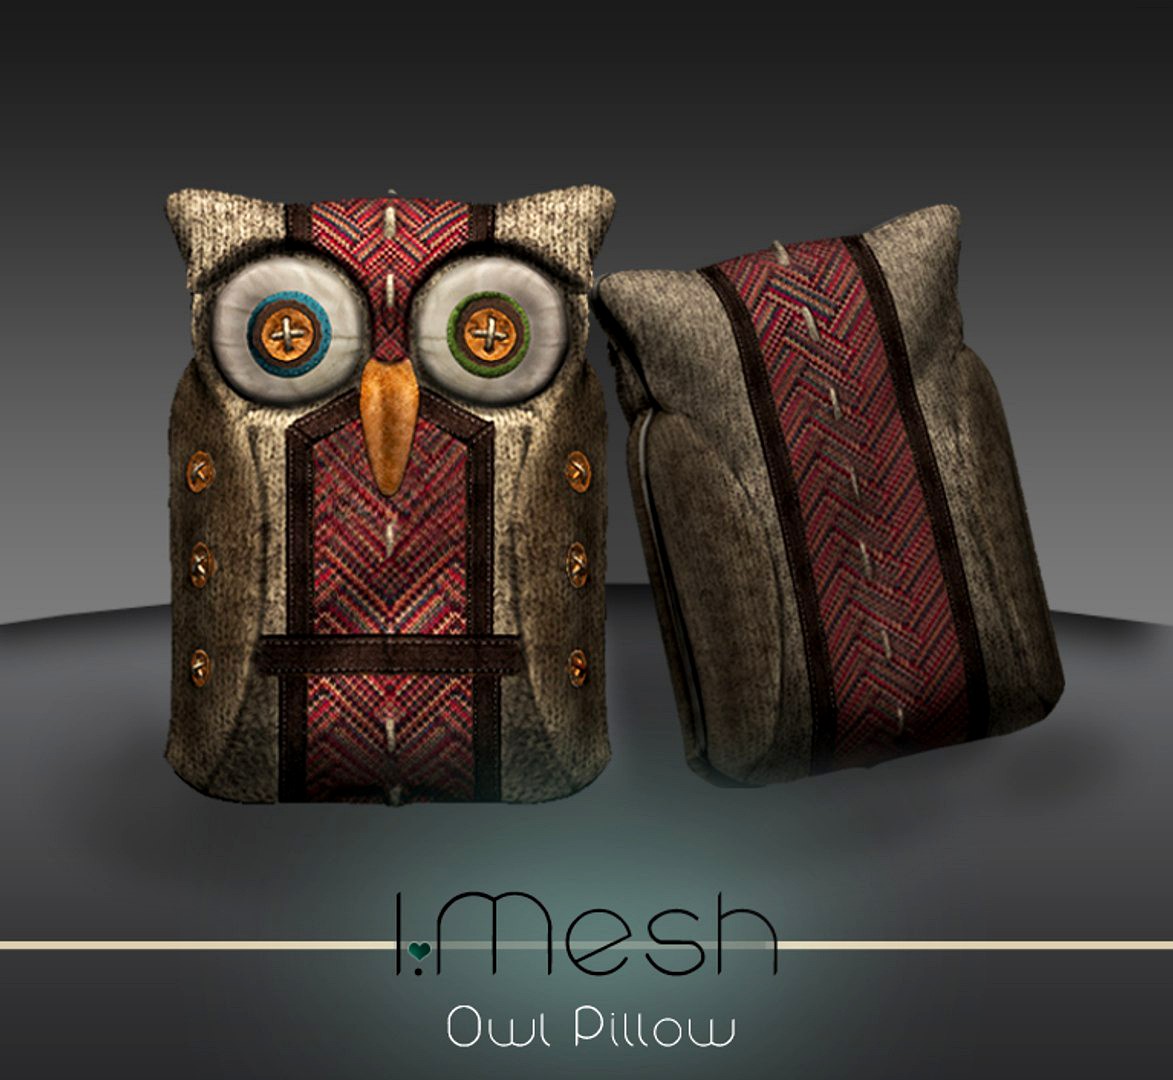 OWL pillow